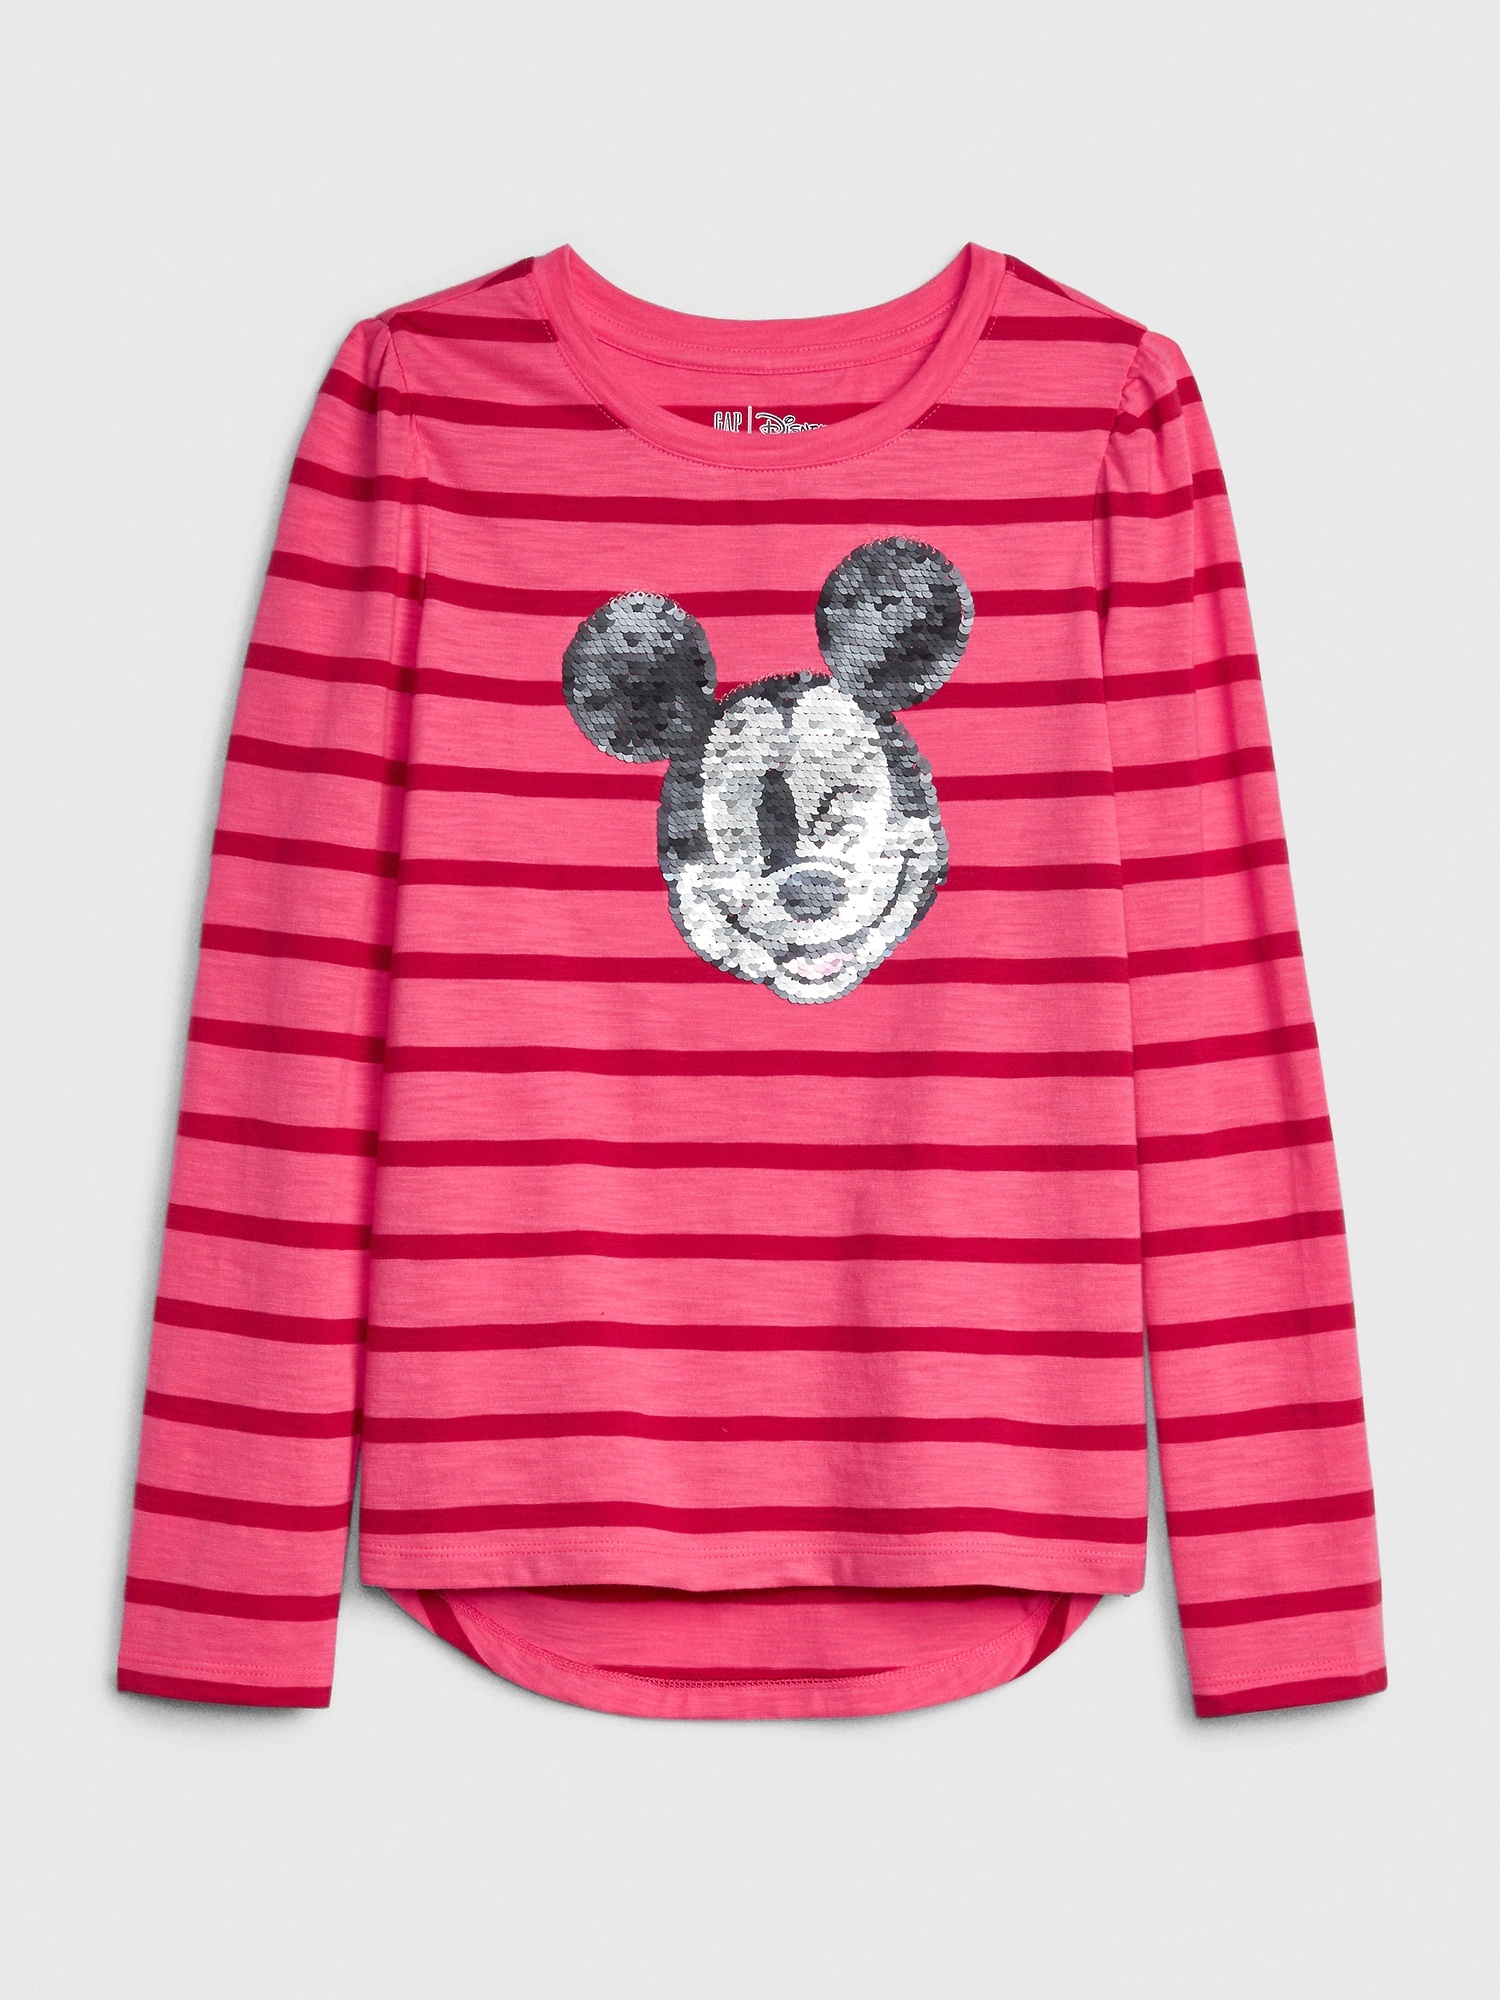 女童裝|Gap x Disney迪士尼聯名 米奇套裝長袖T恤-粉色條紋